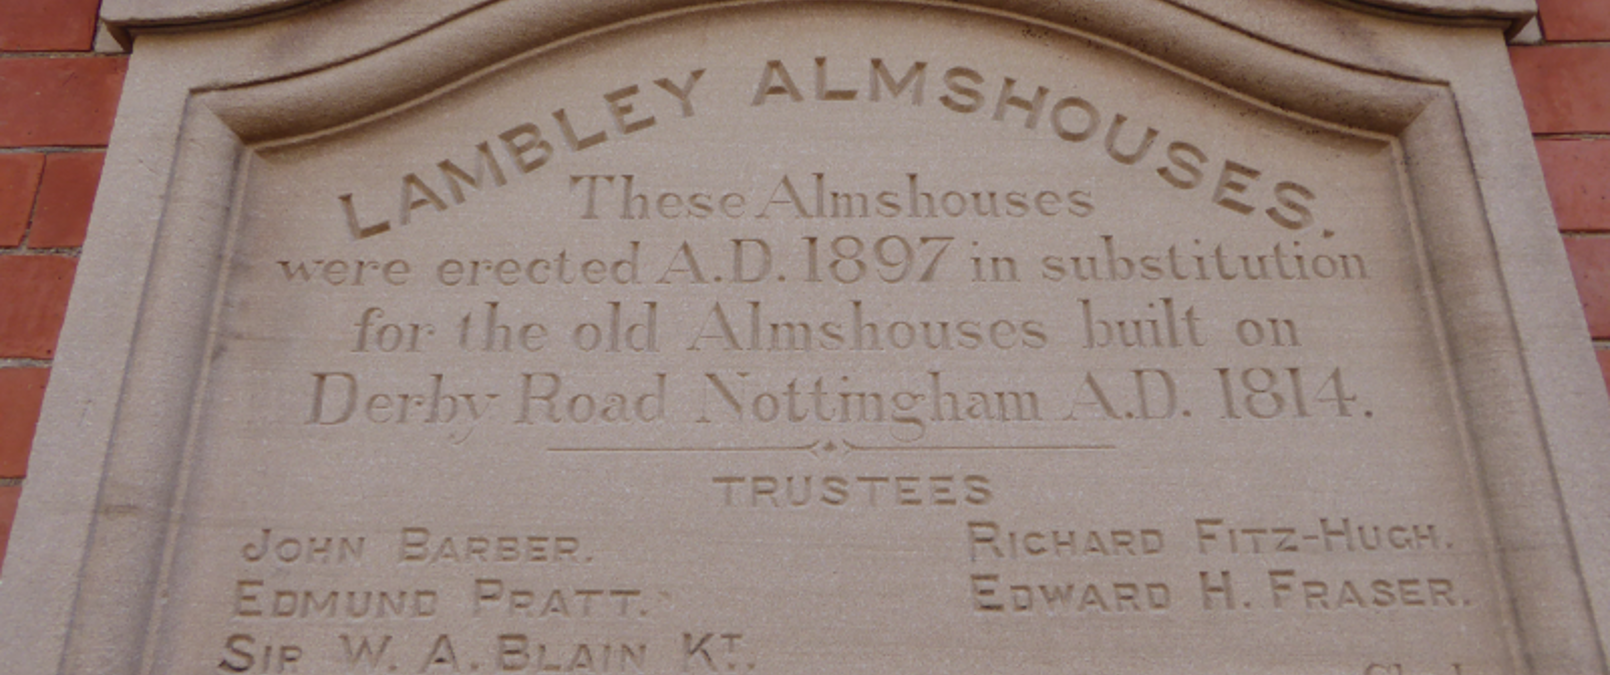 Lambley Almshouses Plaque